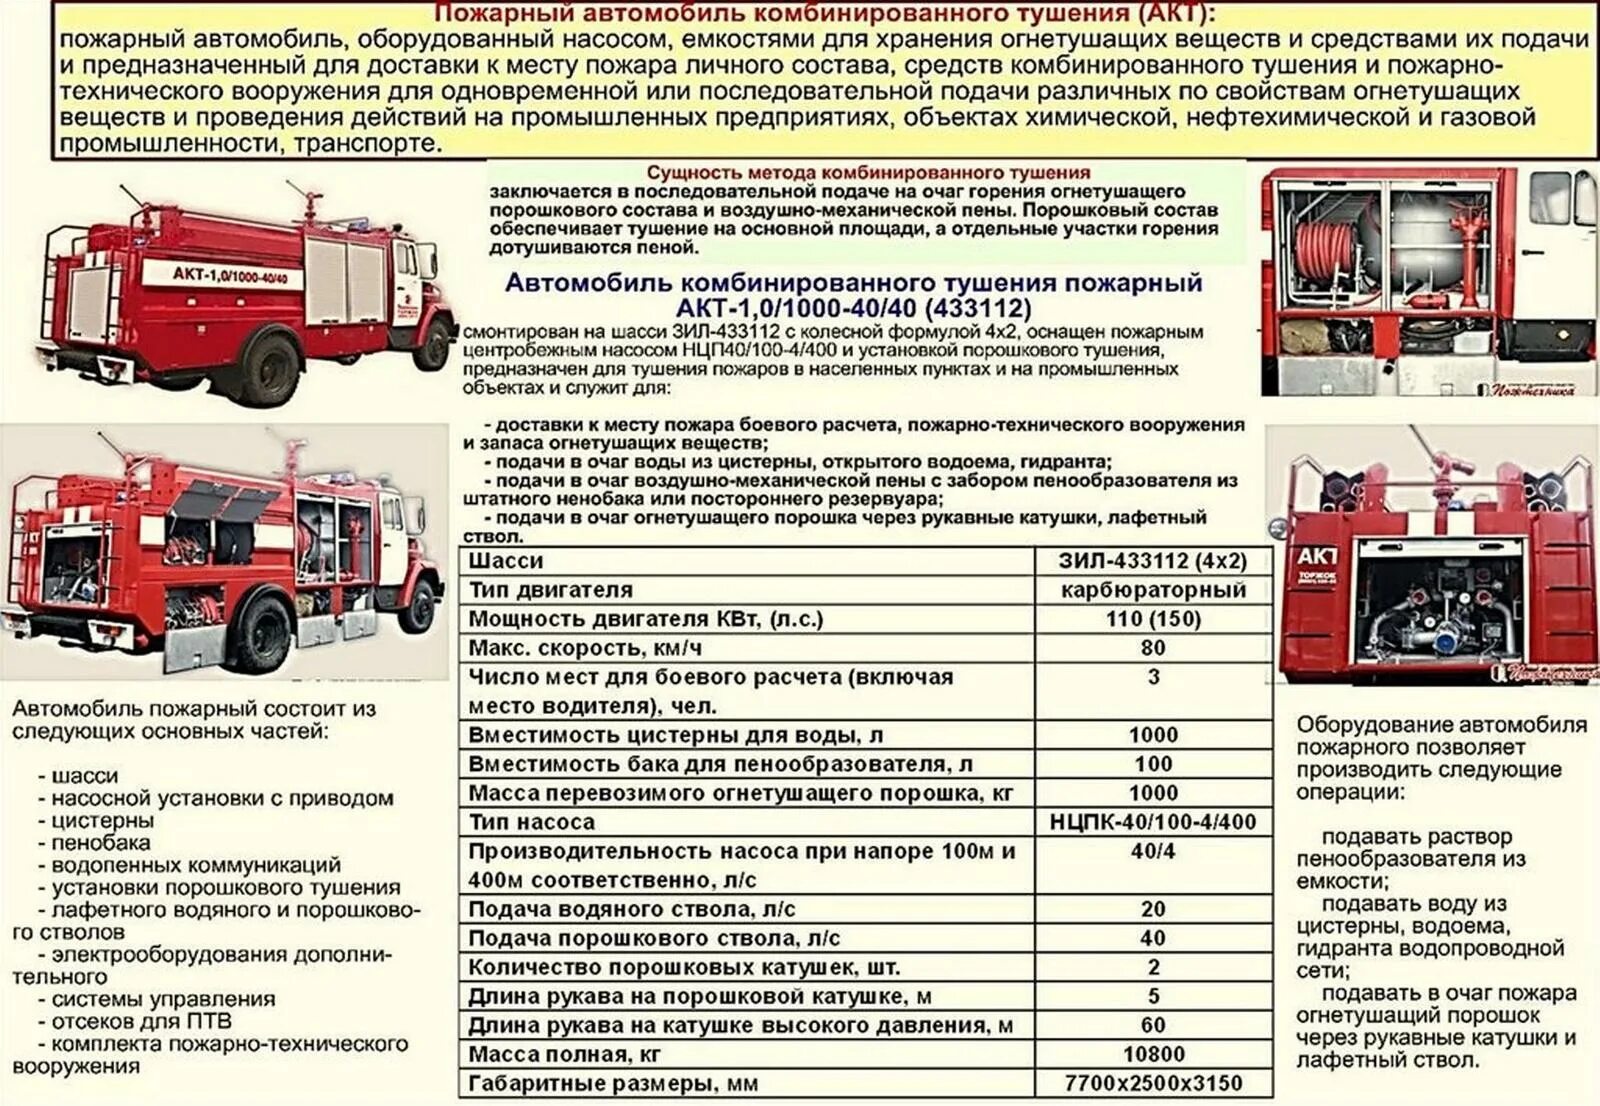 Трансмиссия пожарных автомобилей. ТТХ пожарного автомобиля КАМАЗ. ТТХ КАМАЗ 53215 пожарного автомобиля. ТТХ 43118 пожарного автомобиля. Масса пожарного автомобиля КАМАЗ.